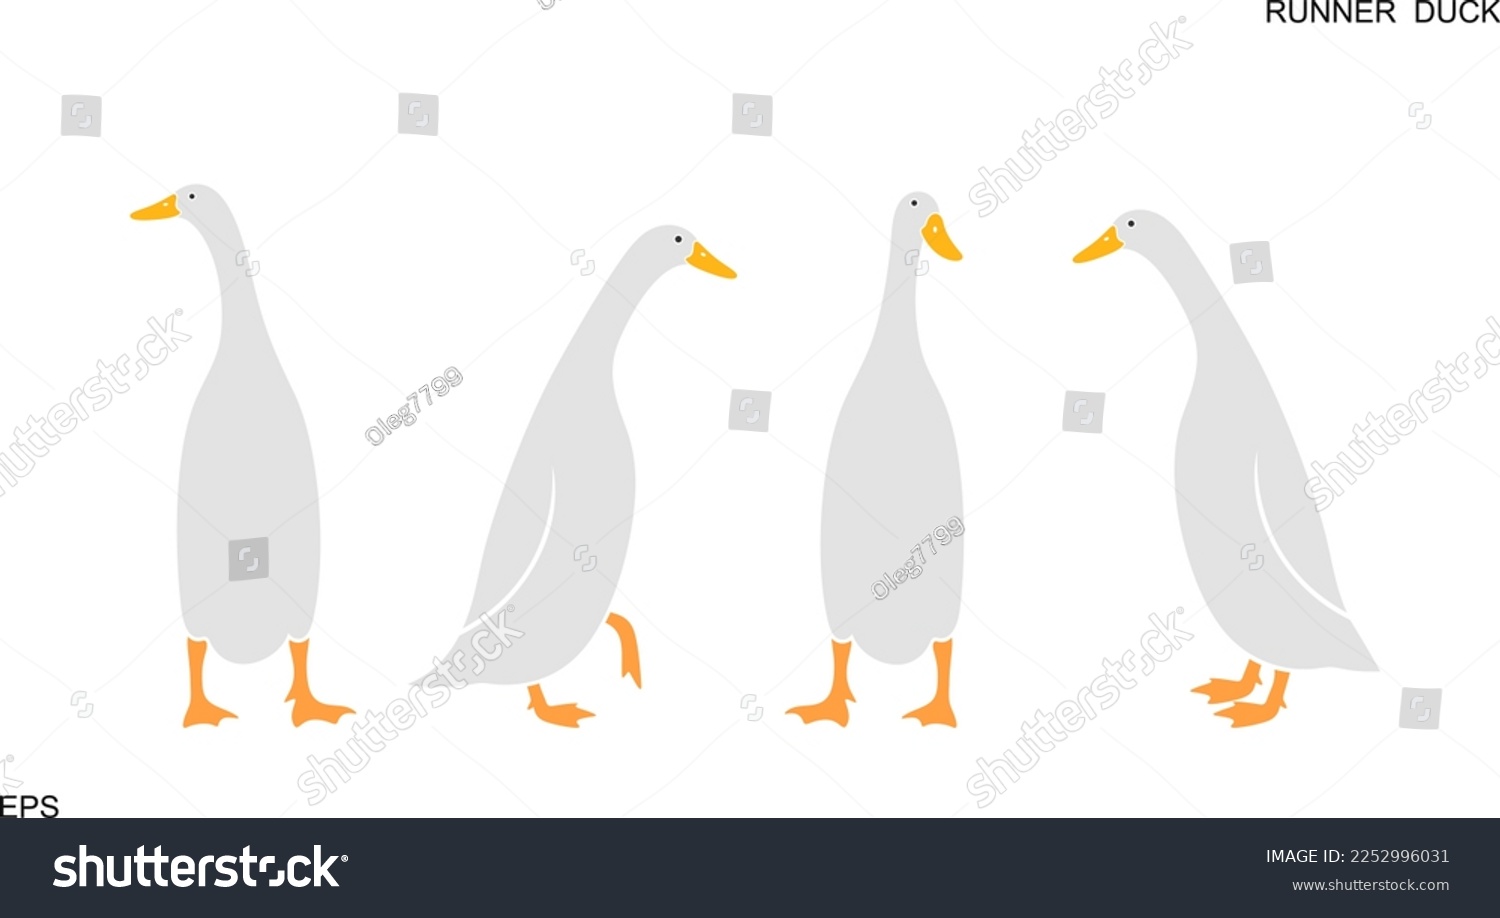 SVG of Indian runner ducks logo. Isolated indian runner ducks on white background. Bird svg